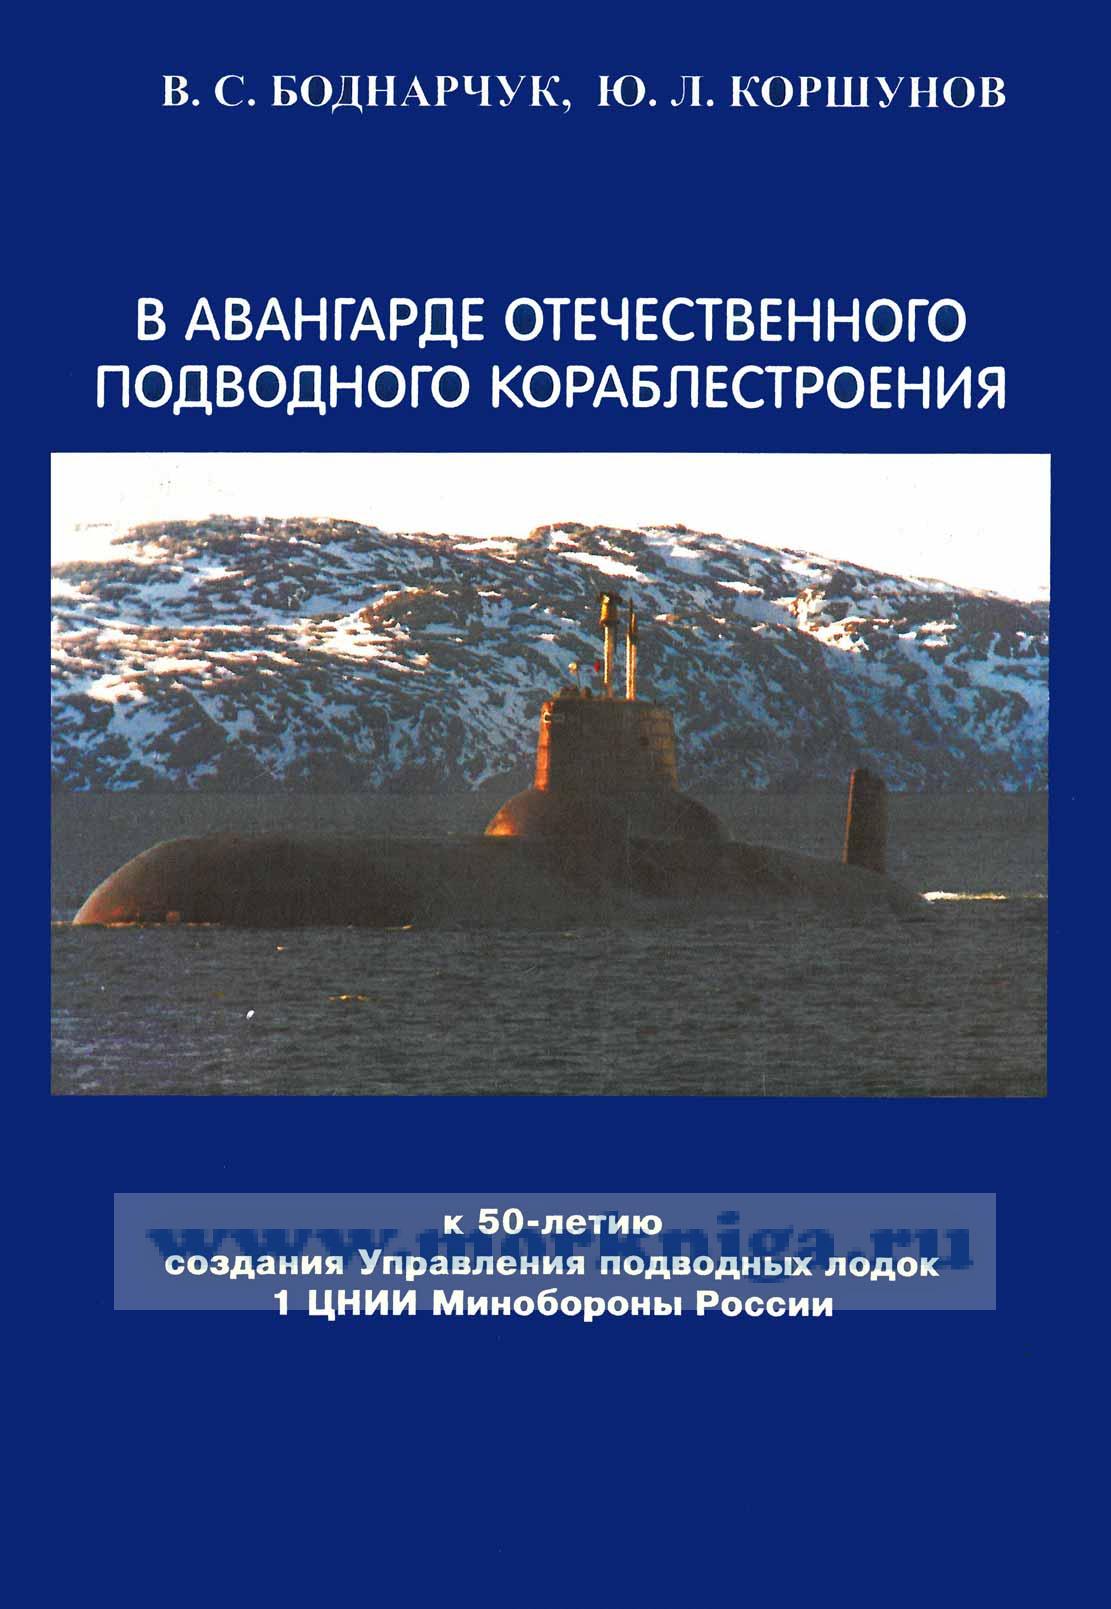 В авангарде отечественного подводного кораблестроения. К 50-летию создания Управления подводных лодок 1 ЦНИИ Минобороны России